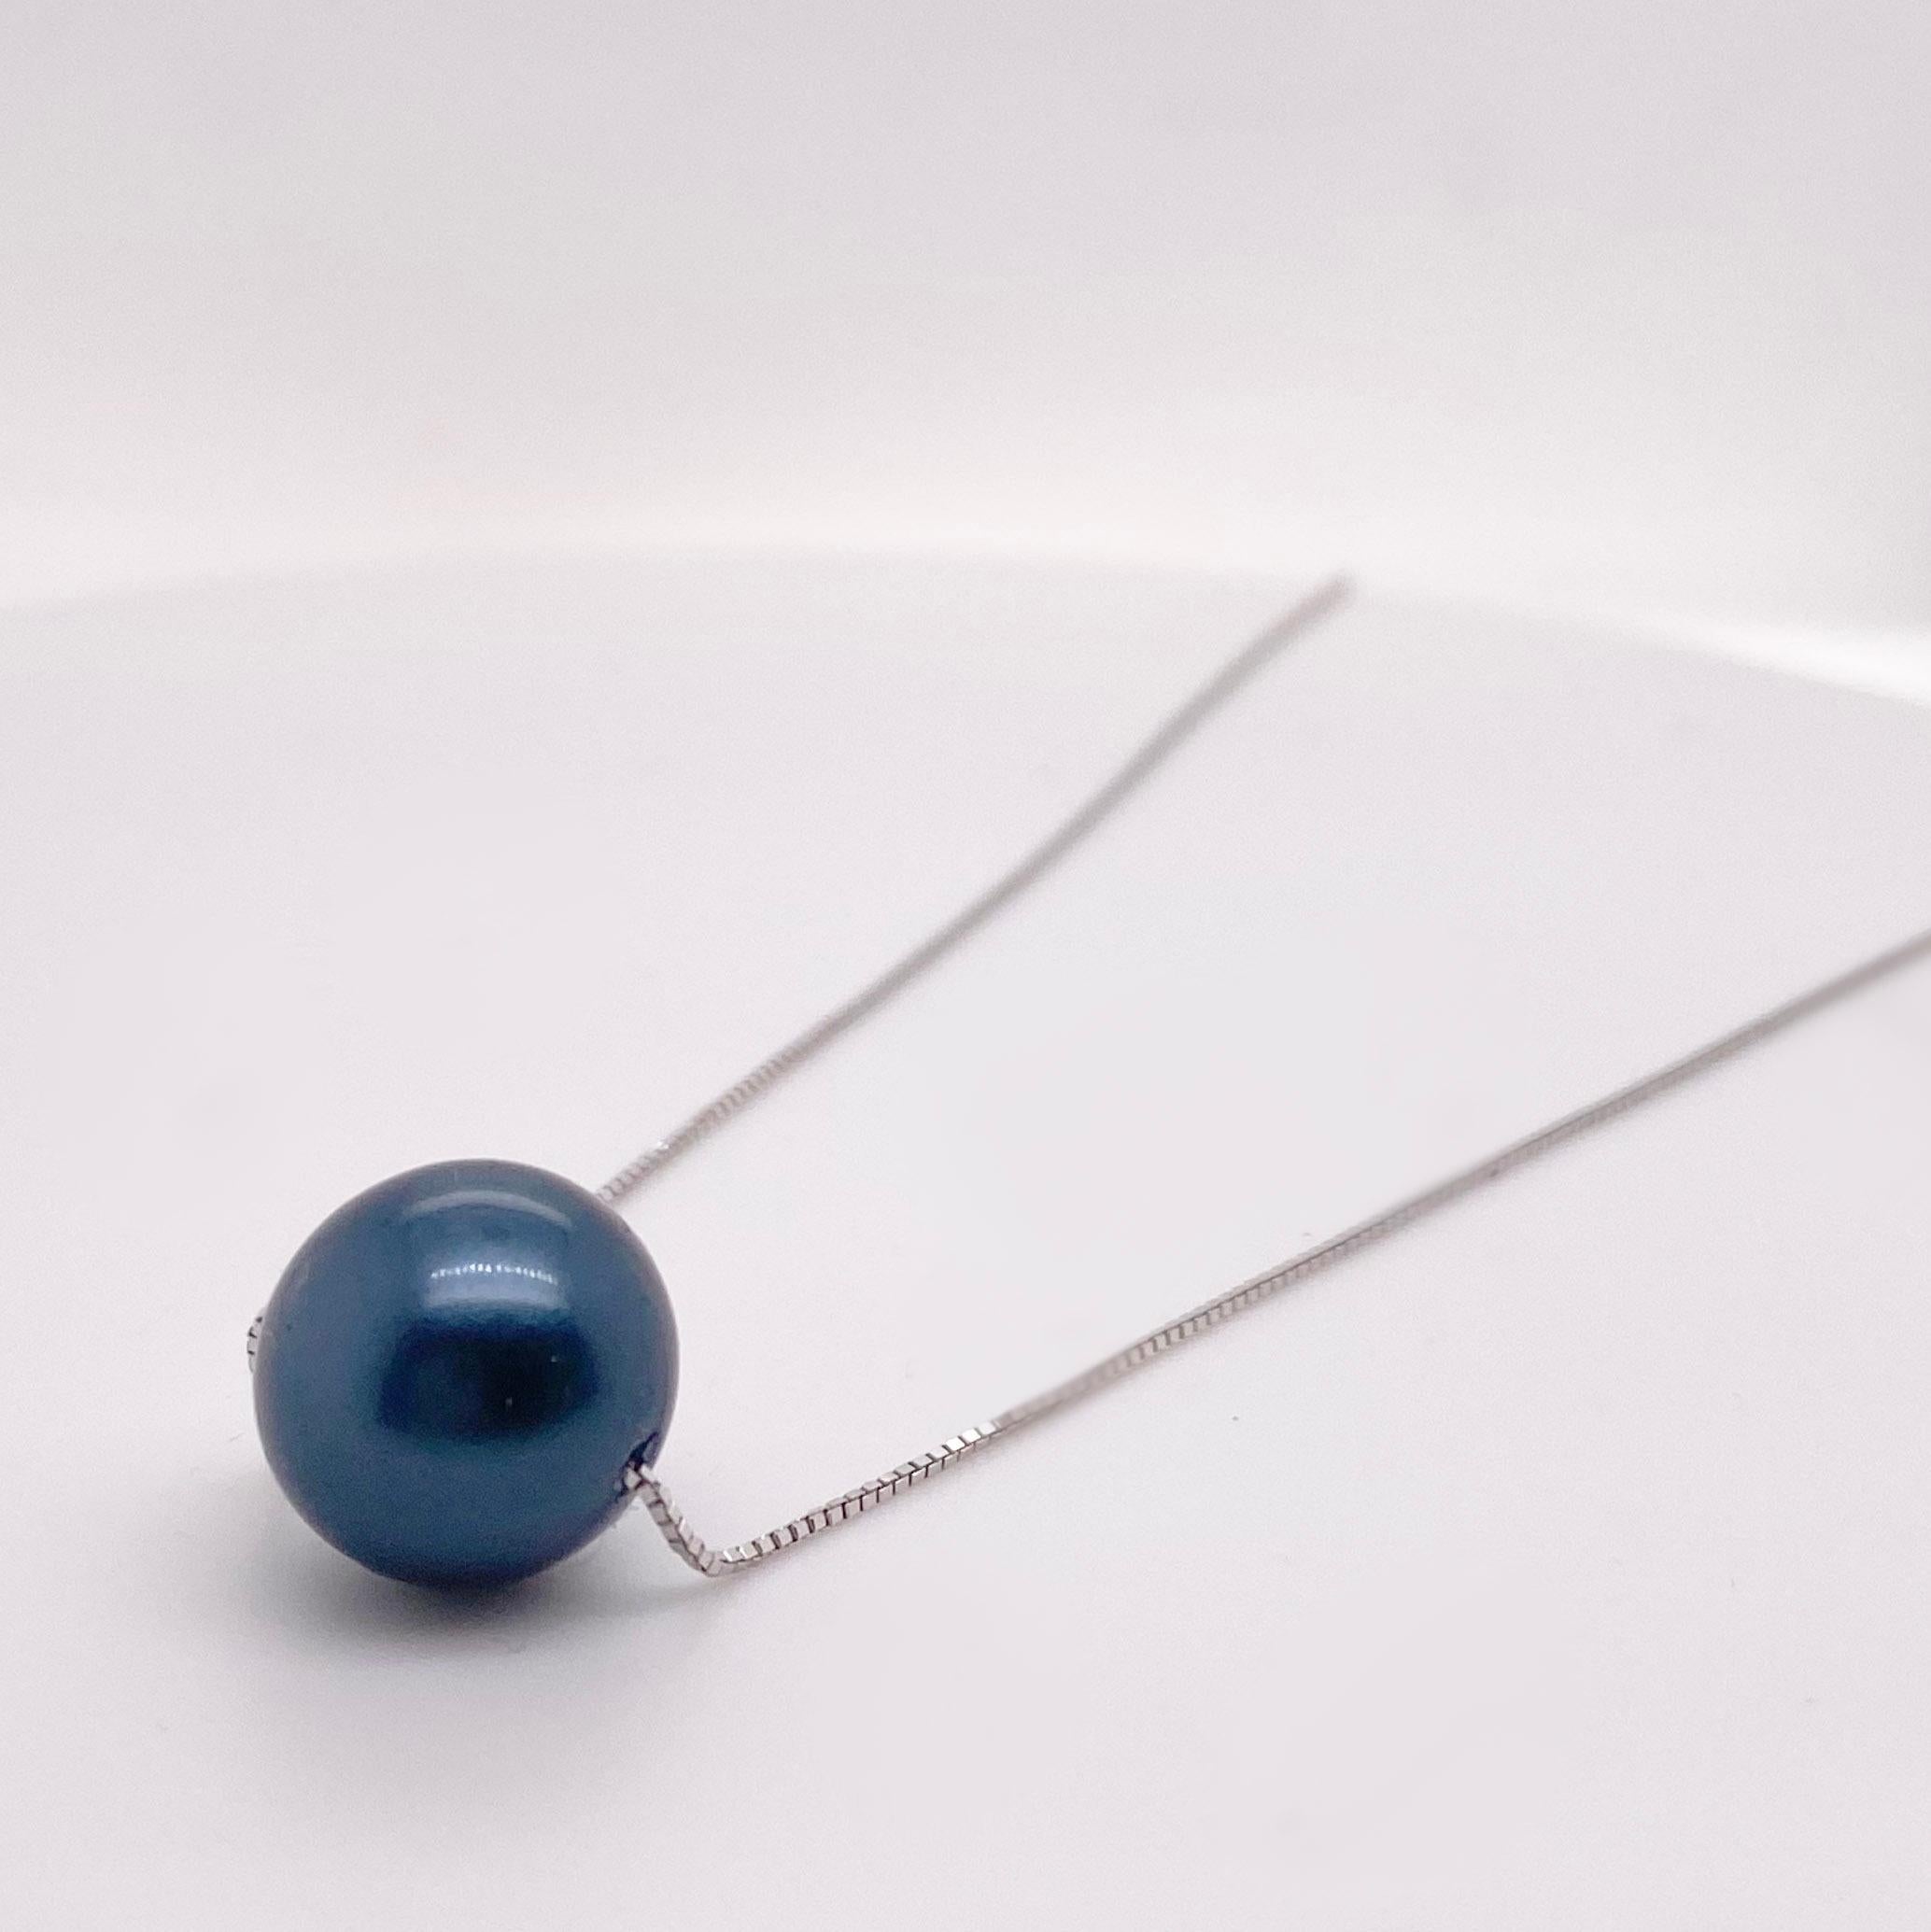 Ce collier est très agréable à porter en raison de sa simplicité et de sa beauté. La perle ronde en nacre de 12 millimètres est percée de part en part et est parfaitement assortie à une chaîne baby box miroir. La perle présente une brillance et une